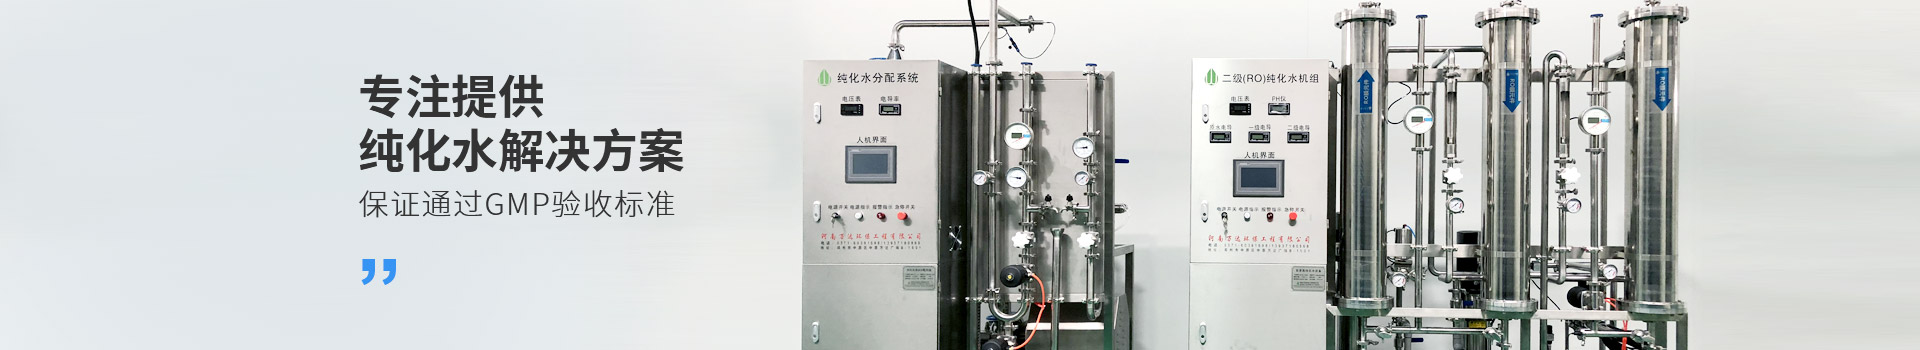 电池行业用超纯水-行业资料-武汉纯水设备厂家 (PC+WAP)-纯净水设备生产销售